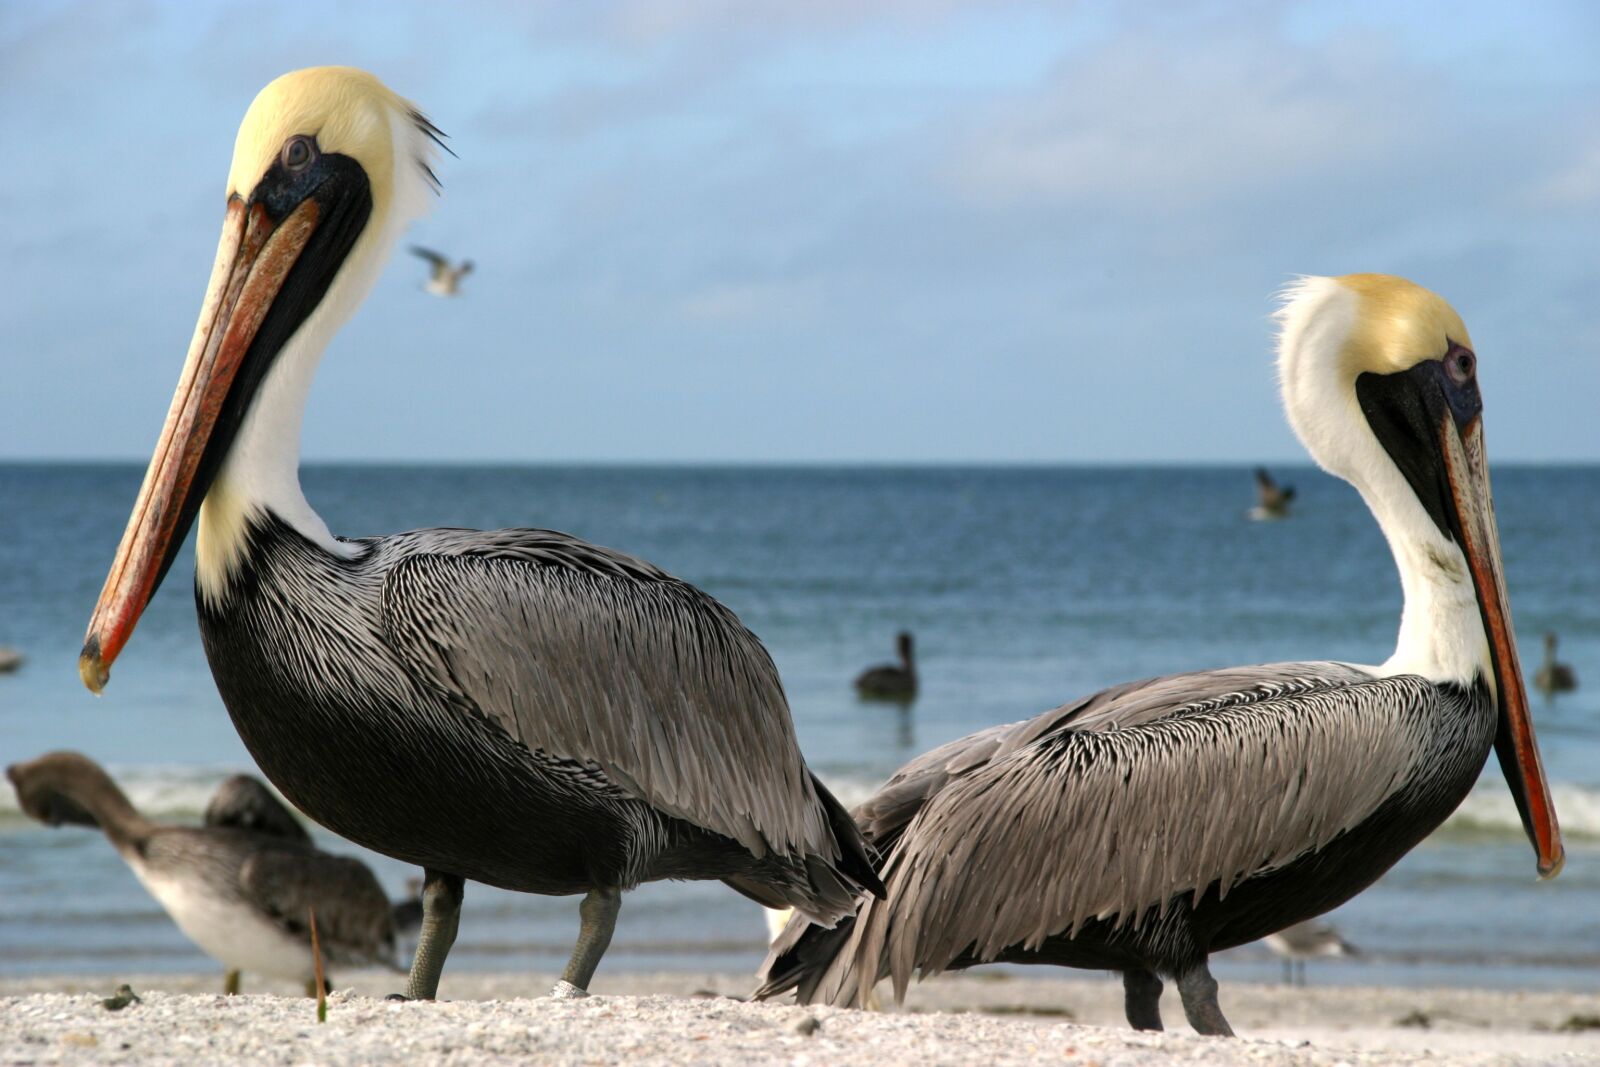 Canon EOS 10D sample photo. Pelicans, sea, outlook photography